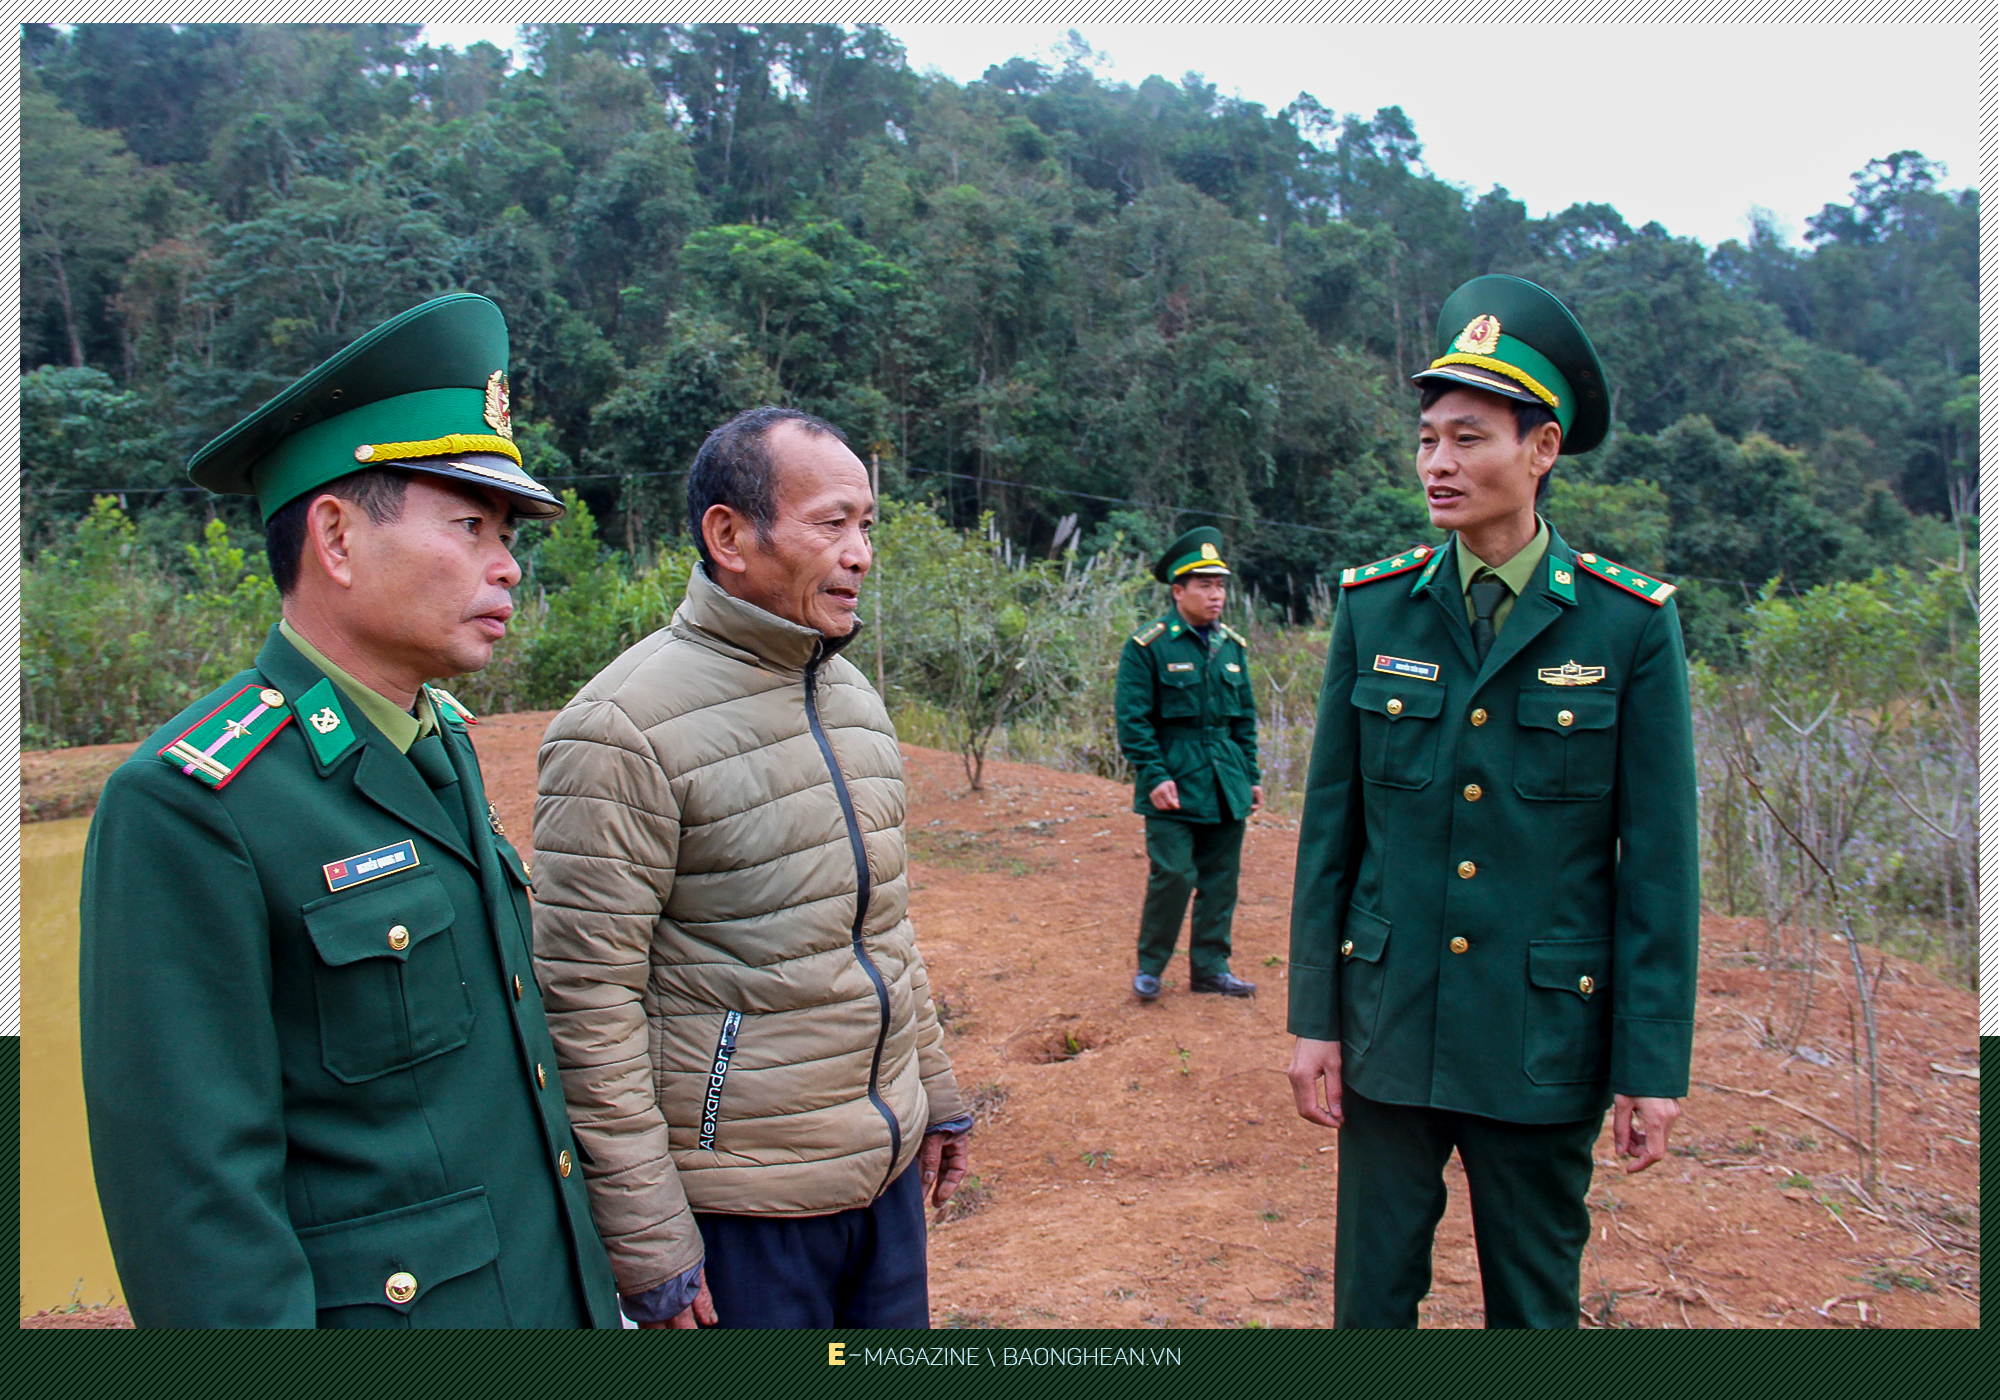 Cán bộ Đồn Biên phòng Keng Đu trao đổi với ông Moong Phò Lư về hướng vươn lên phát triển kinh tế để thoát đói nghèo.